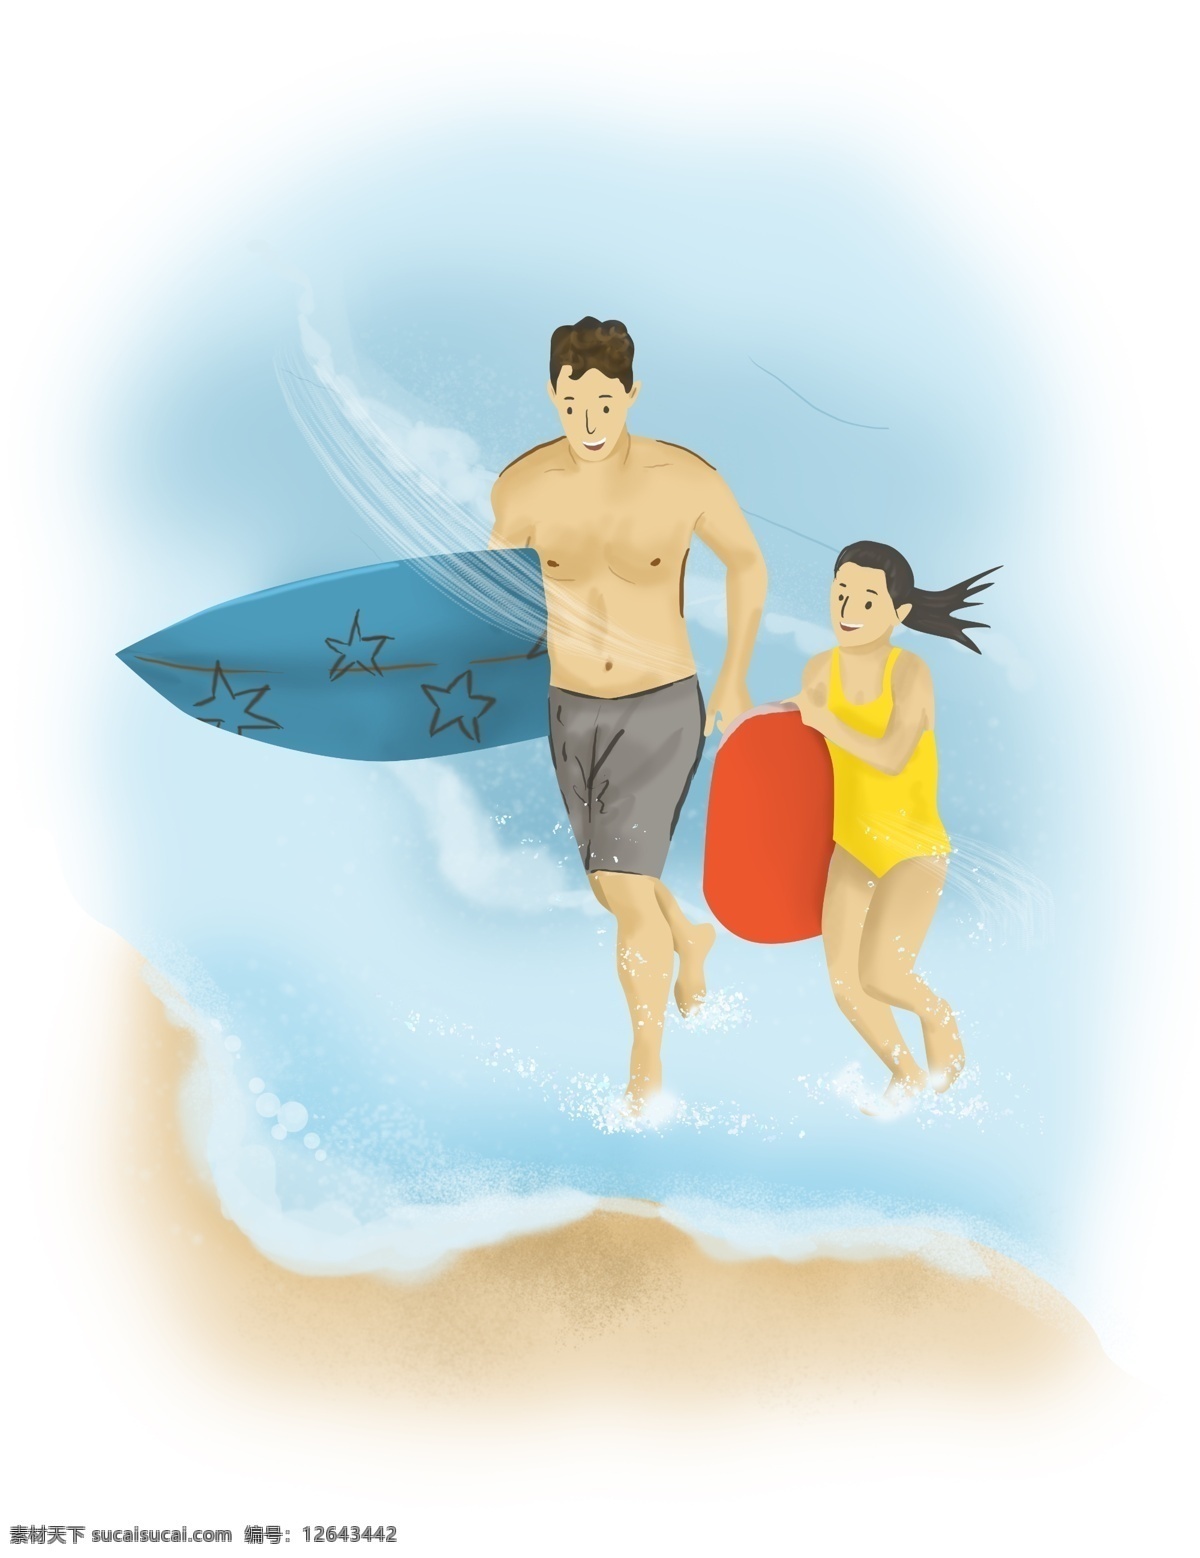 父亲节 海边 冲浪 父女 爸爸 节日 亲人 男人 开心 玩具 人物 手绘 游泳 夏季 人像 卡通 插图 插画